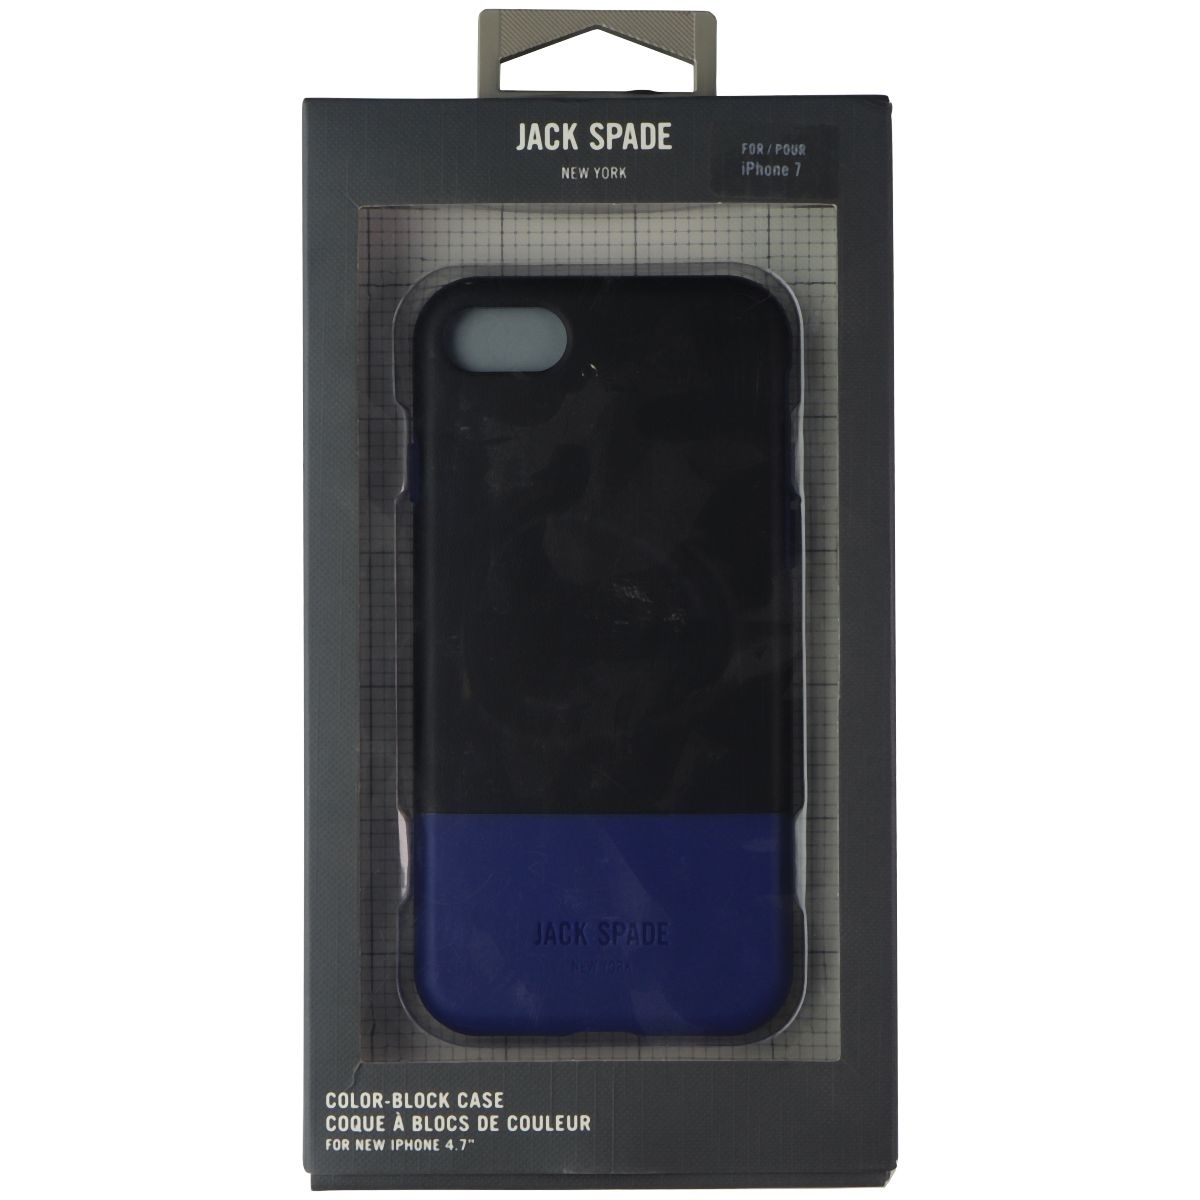 Jack Spade New York Color-Block Case For Apple IPhone 7 - Black/Blue (Refurbished)